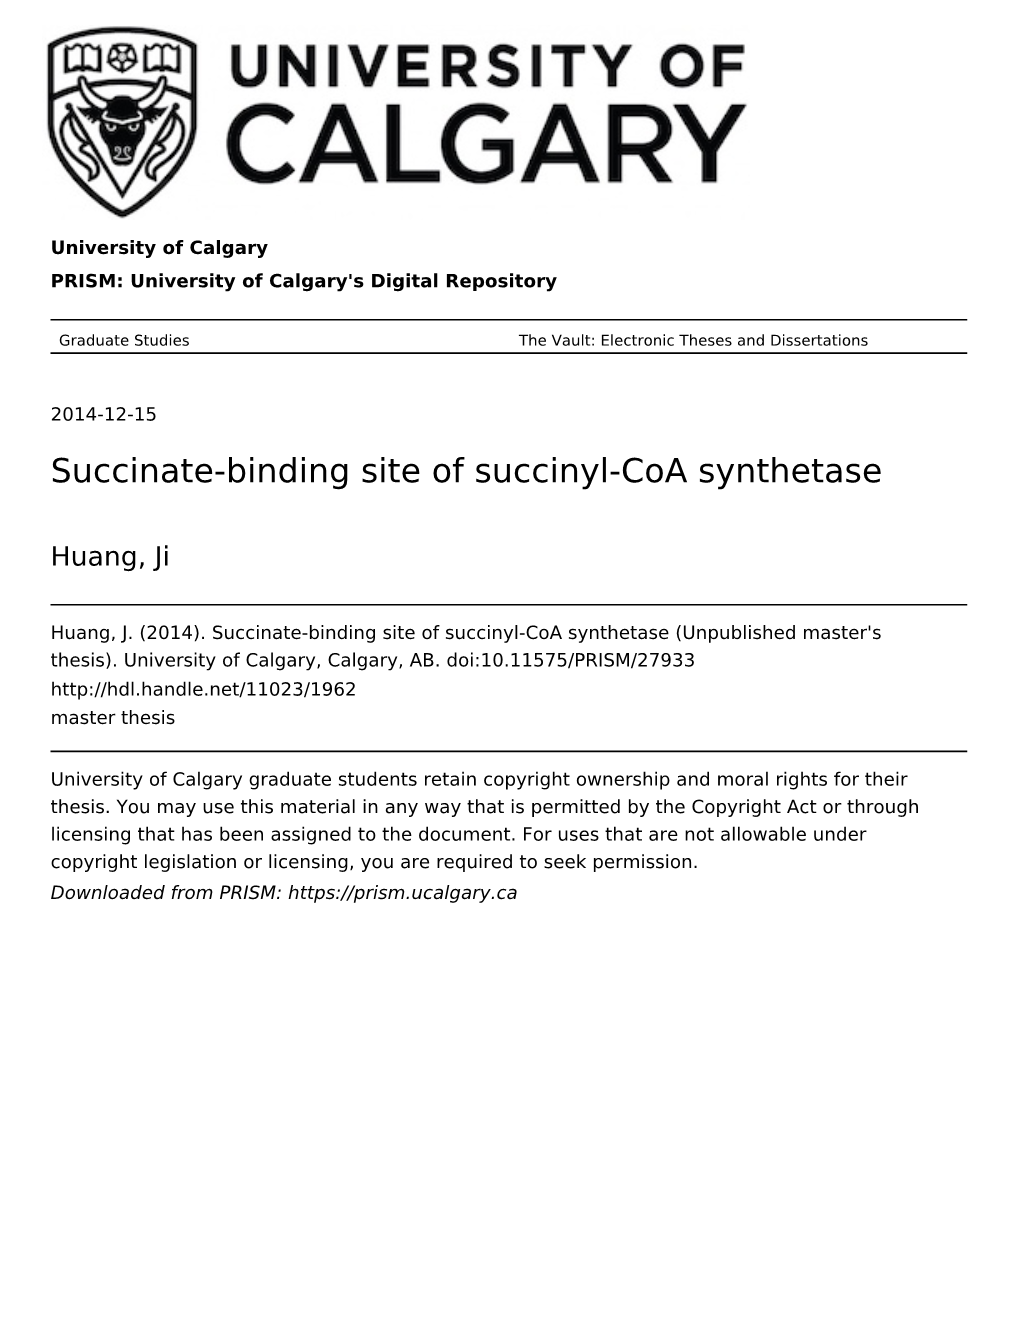 Succinate-Binding Site of Succinyl-Coa Synthetase